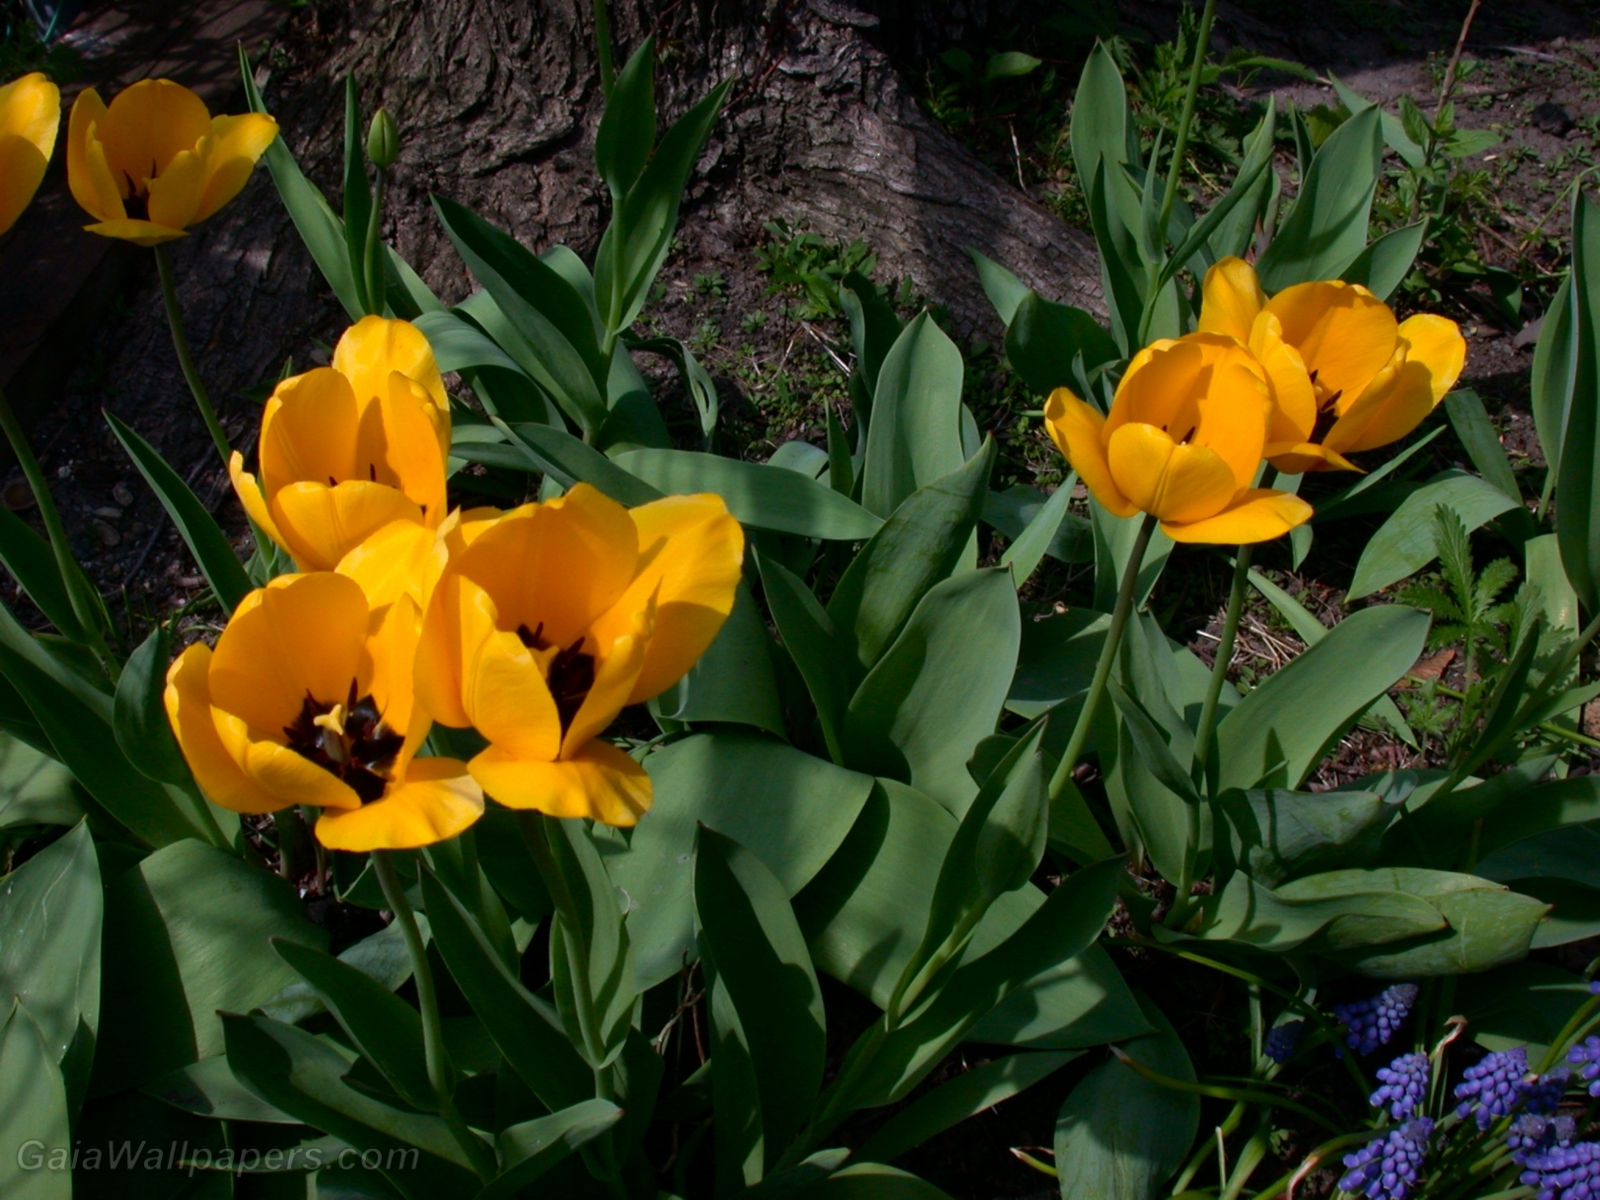 Tulipes jaunes - Fonds d'écran gratuits